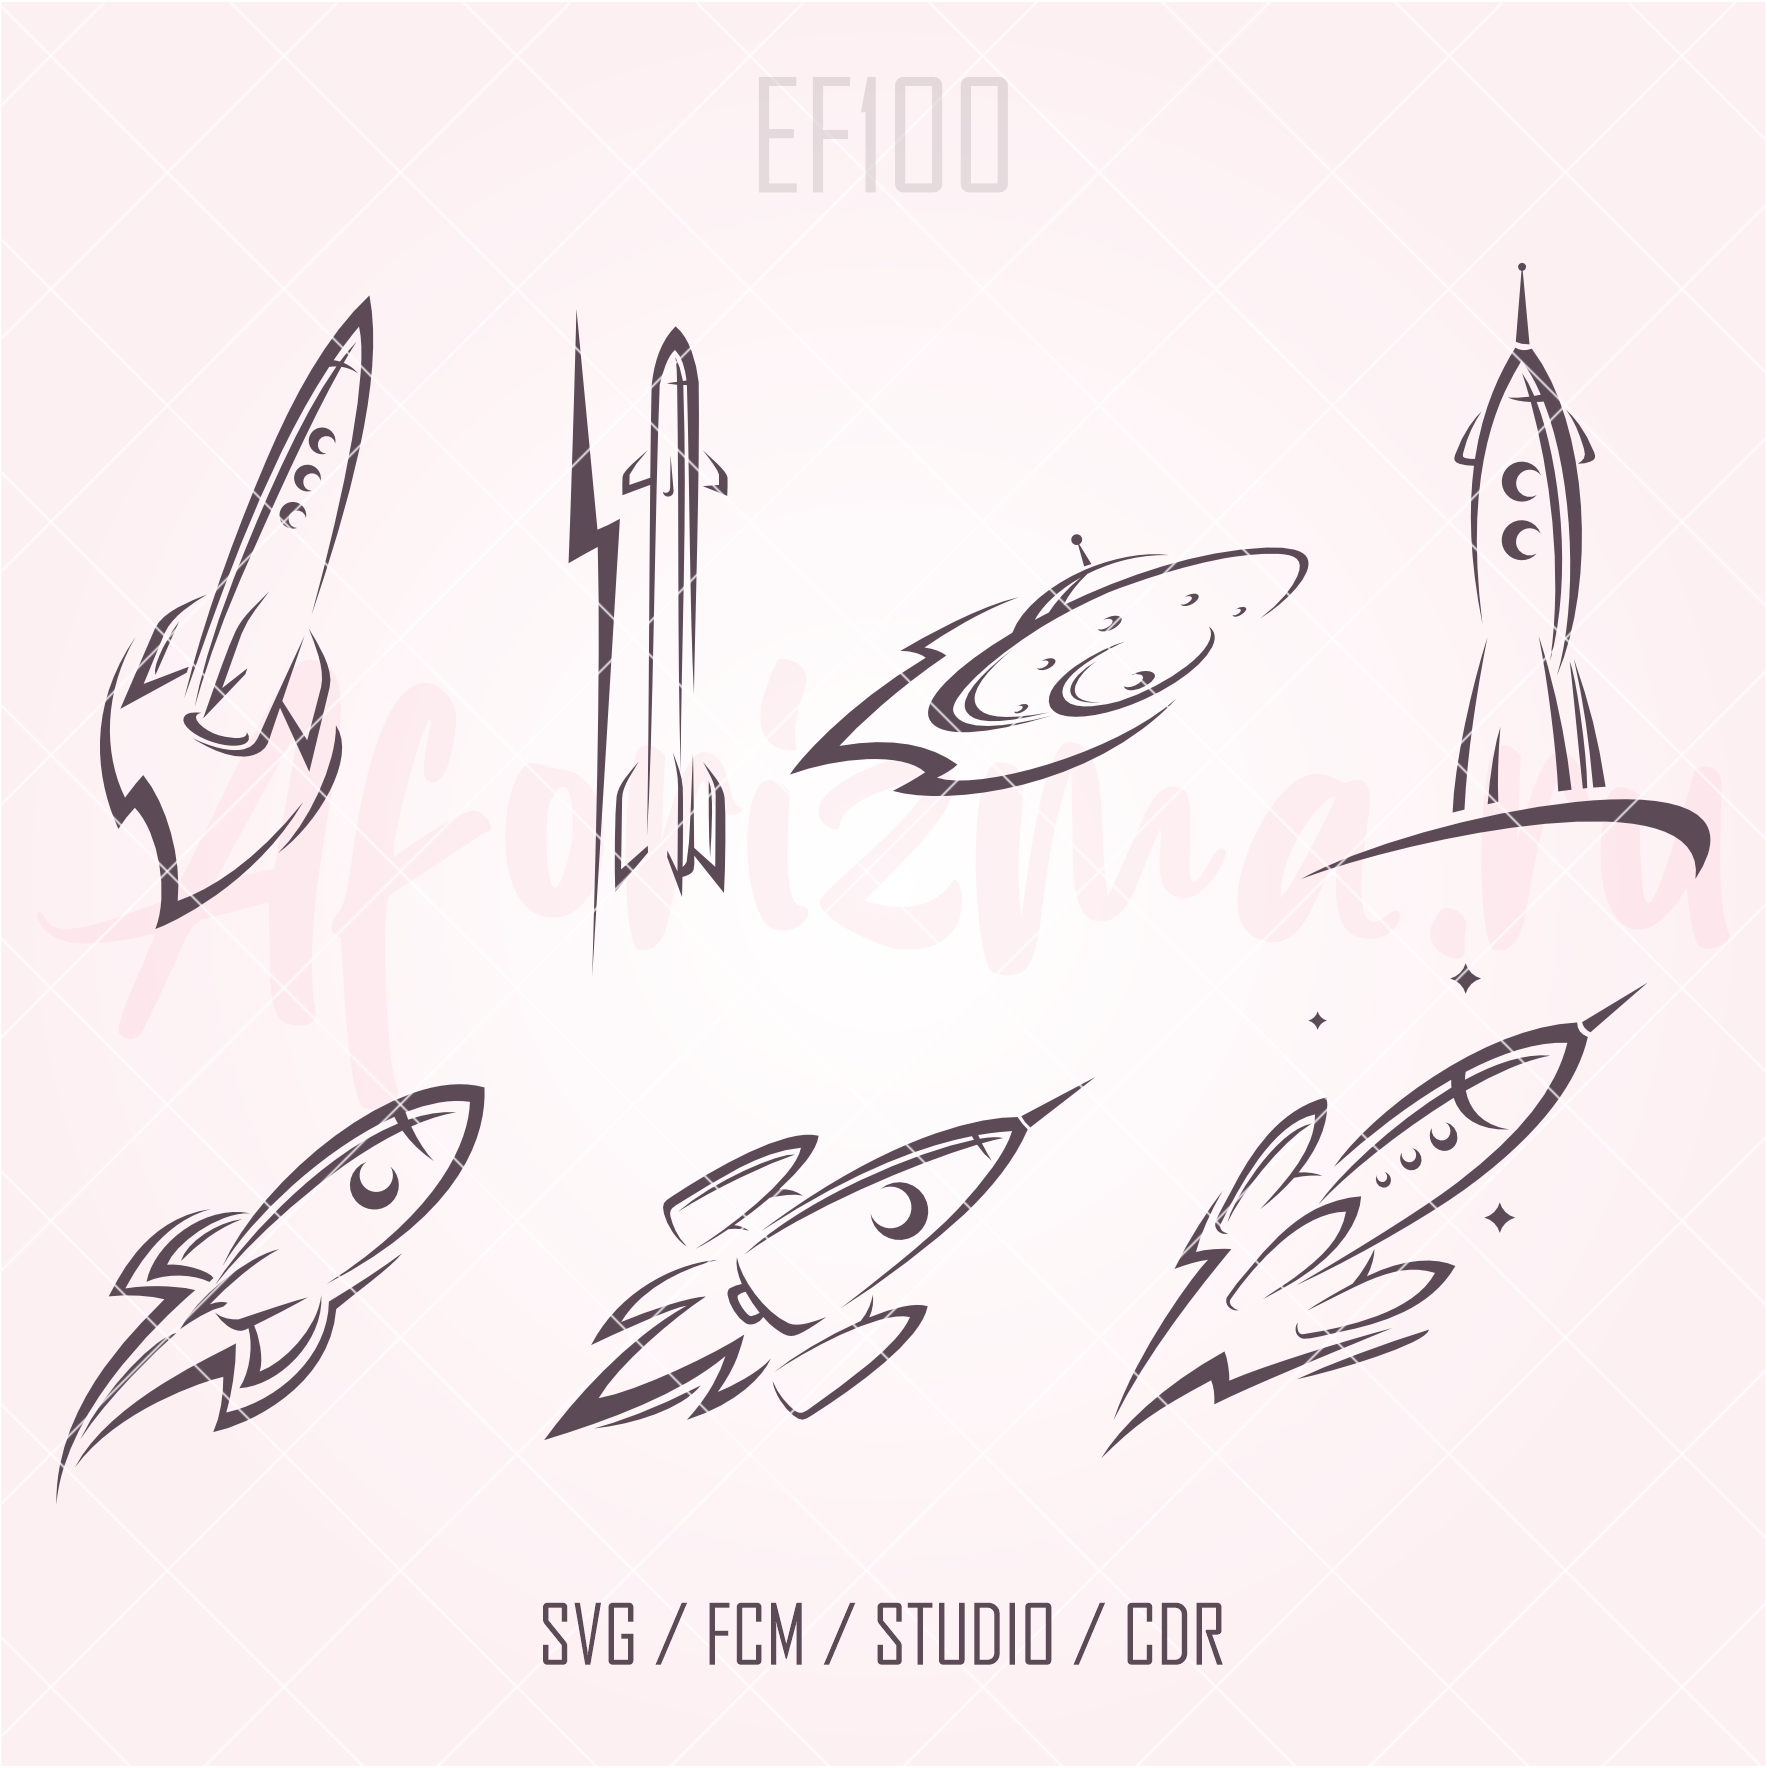 (EF100) Ракеты 4